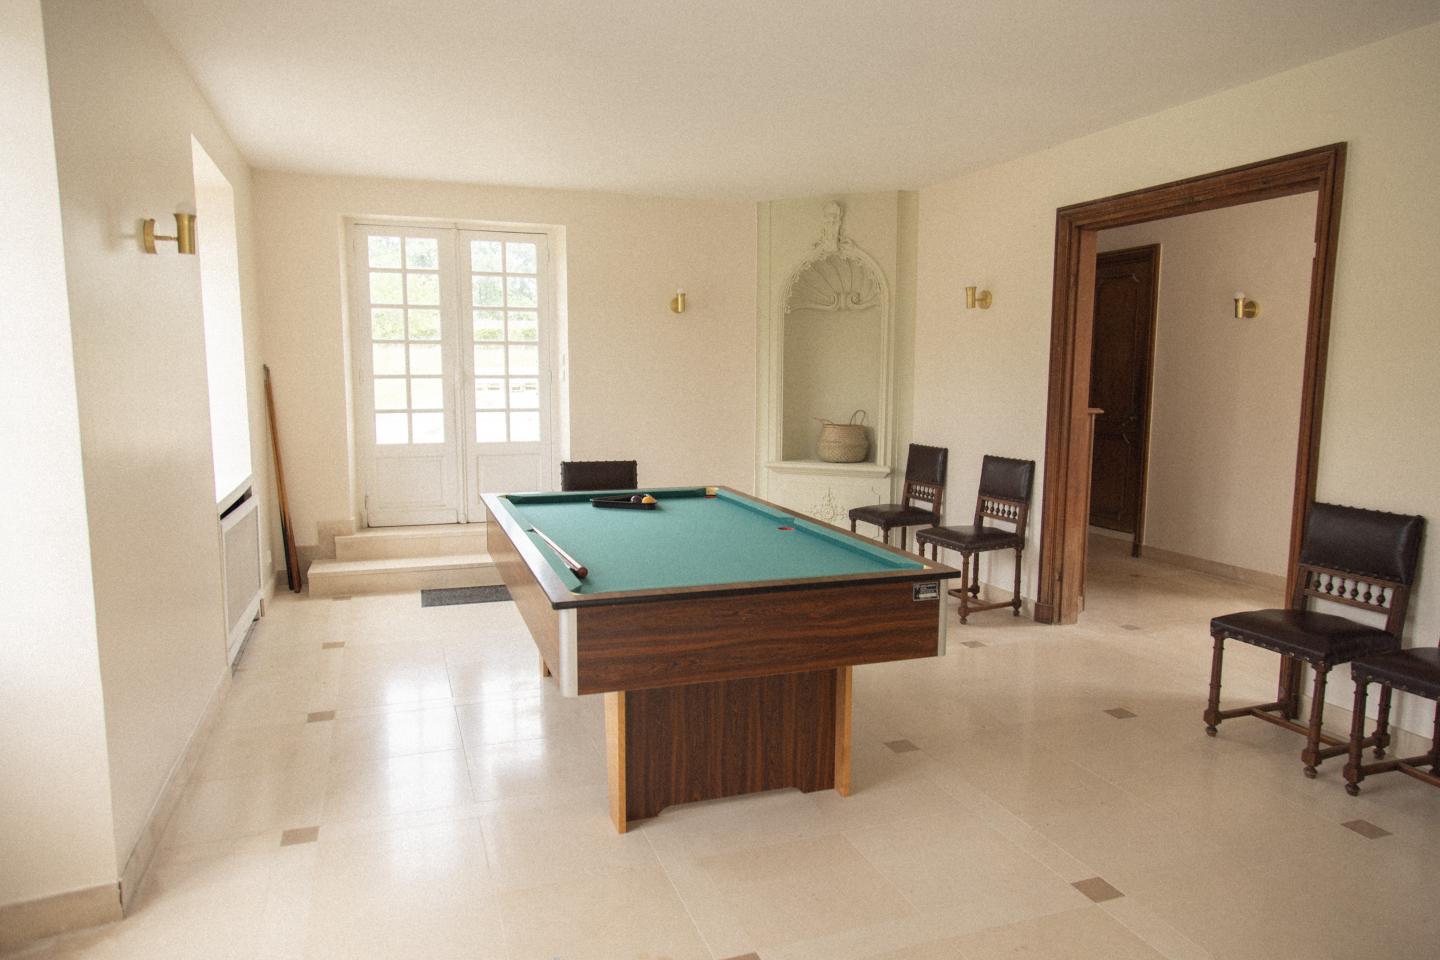 Hôte GreenGo: Location maison 15 personnes avec piscine à 50 min de Paris - Image 61